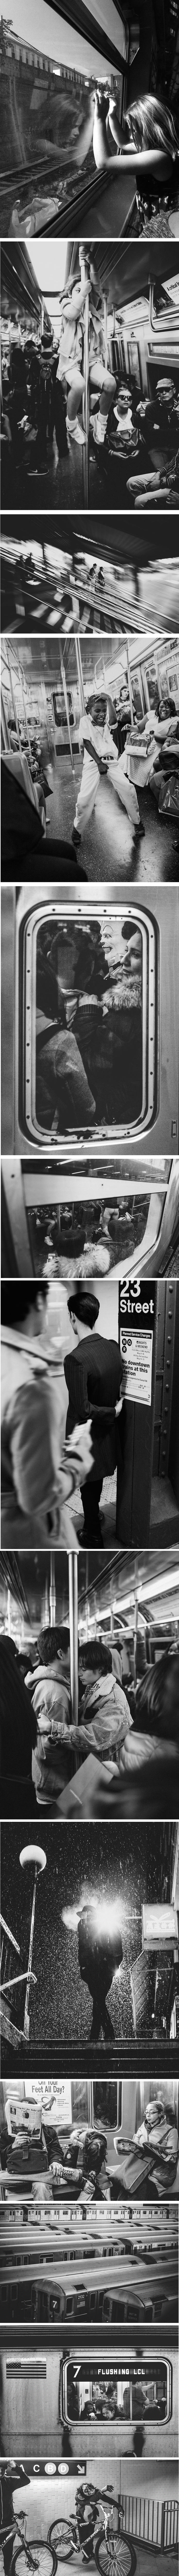 Sva naličja njujorške podzemne željeznice iz očiju fantastičnog fotografa